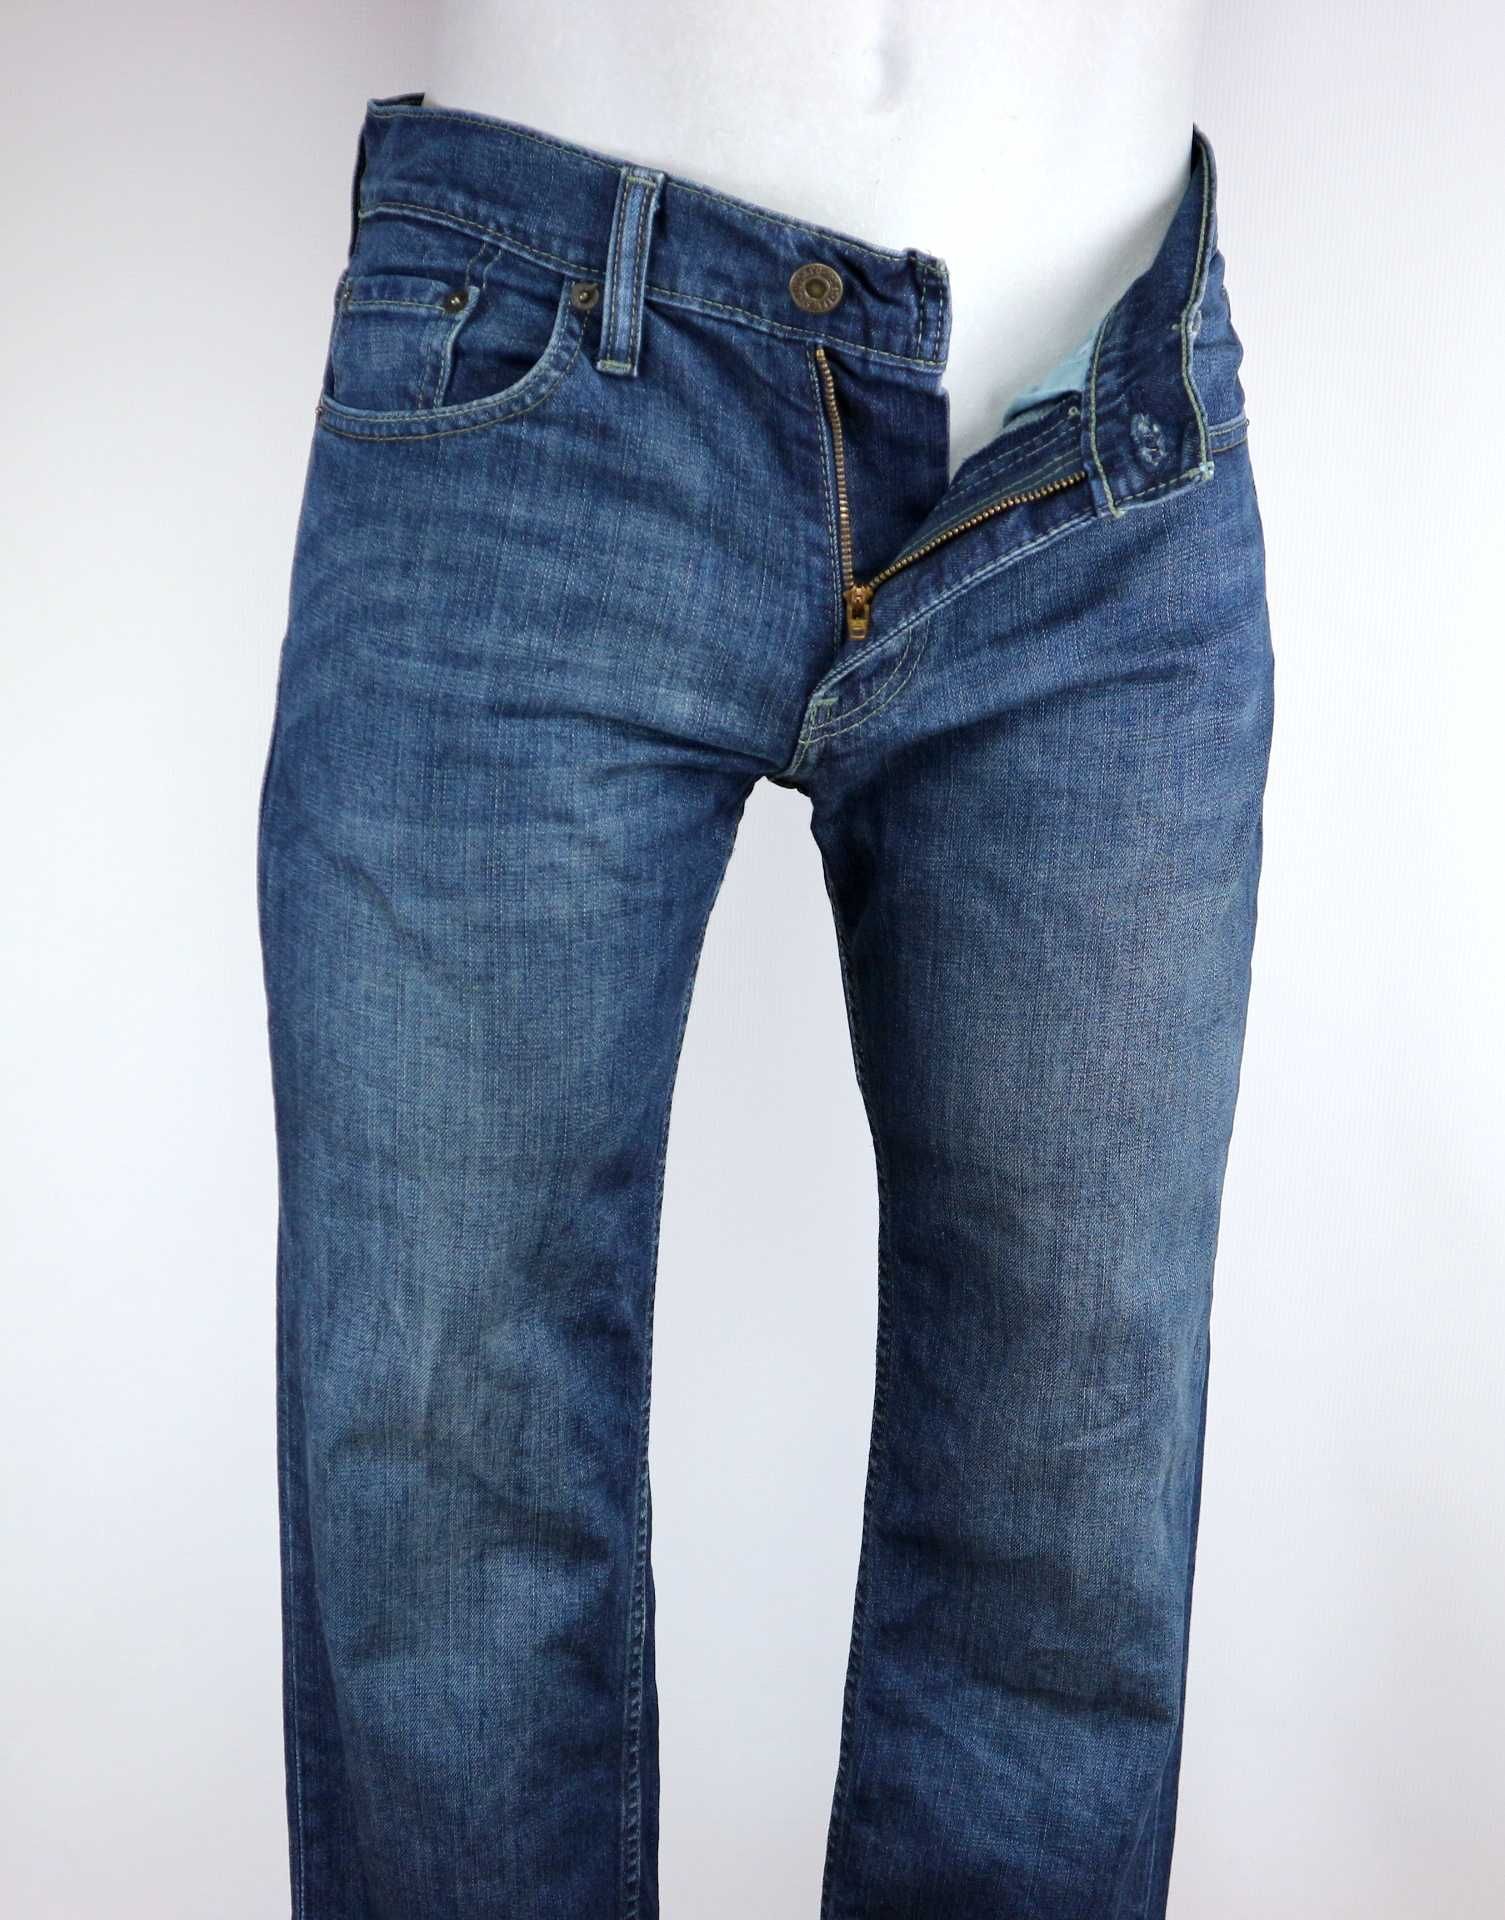 Levis 511 spodnie jeansy W30 L34 pas 2 x 41 cm